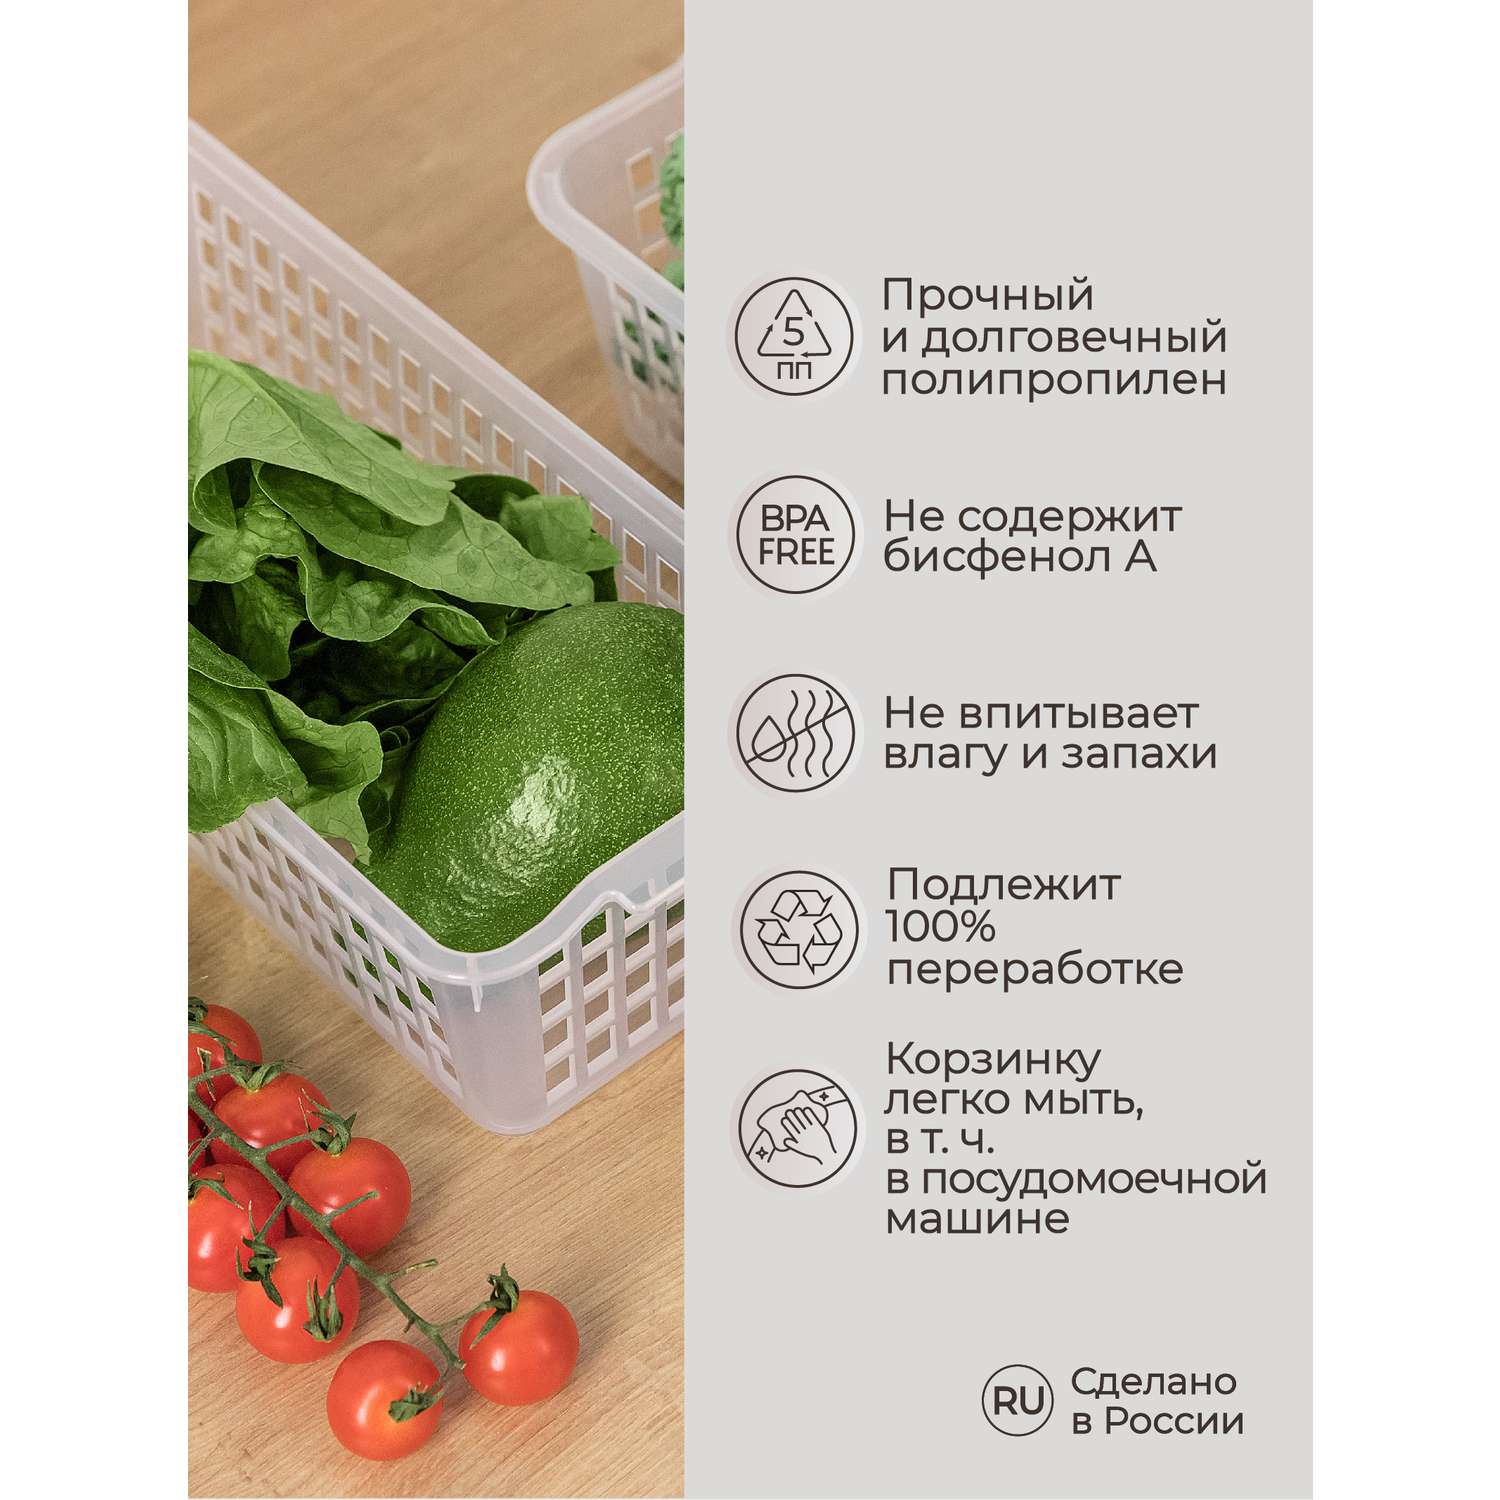 Корзинка универсальная Phibo для хранения в холодильнике прозрачная - фото 5